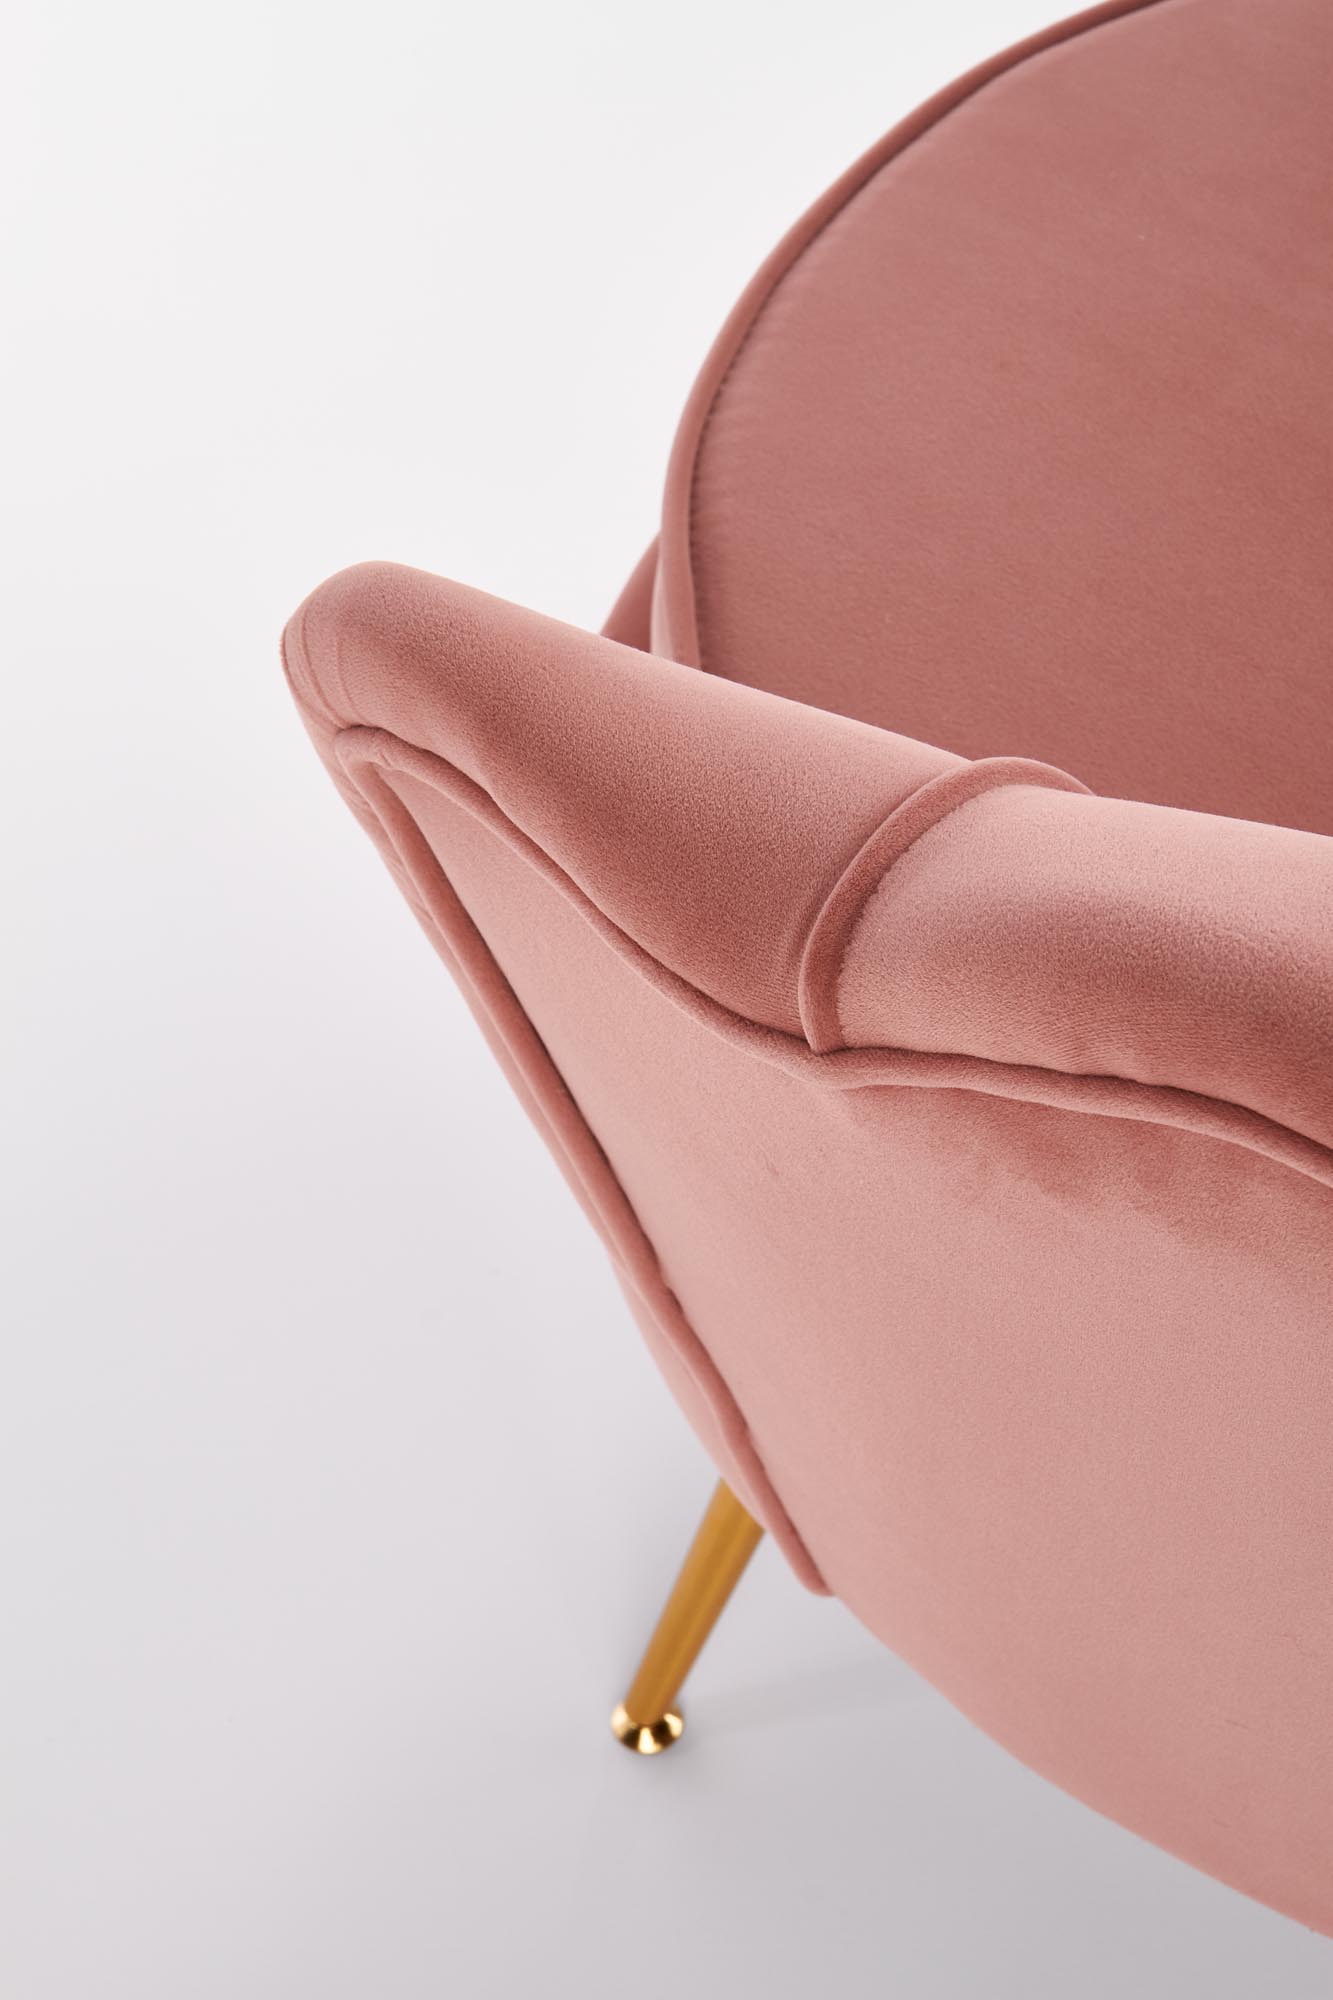 Fotel muszelka Amorinito jasny różowy/złoty fotel muszelka amorinito jasny różowy/złoty